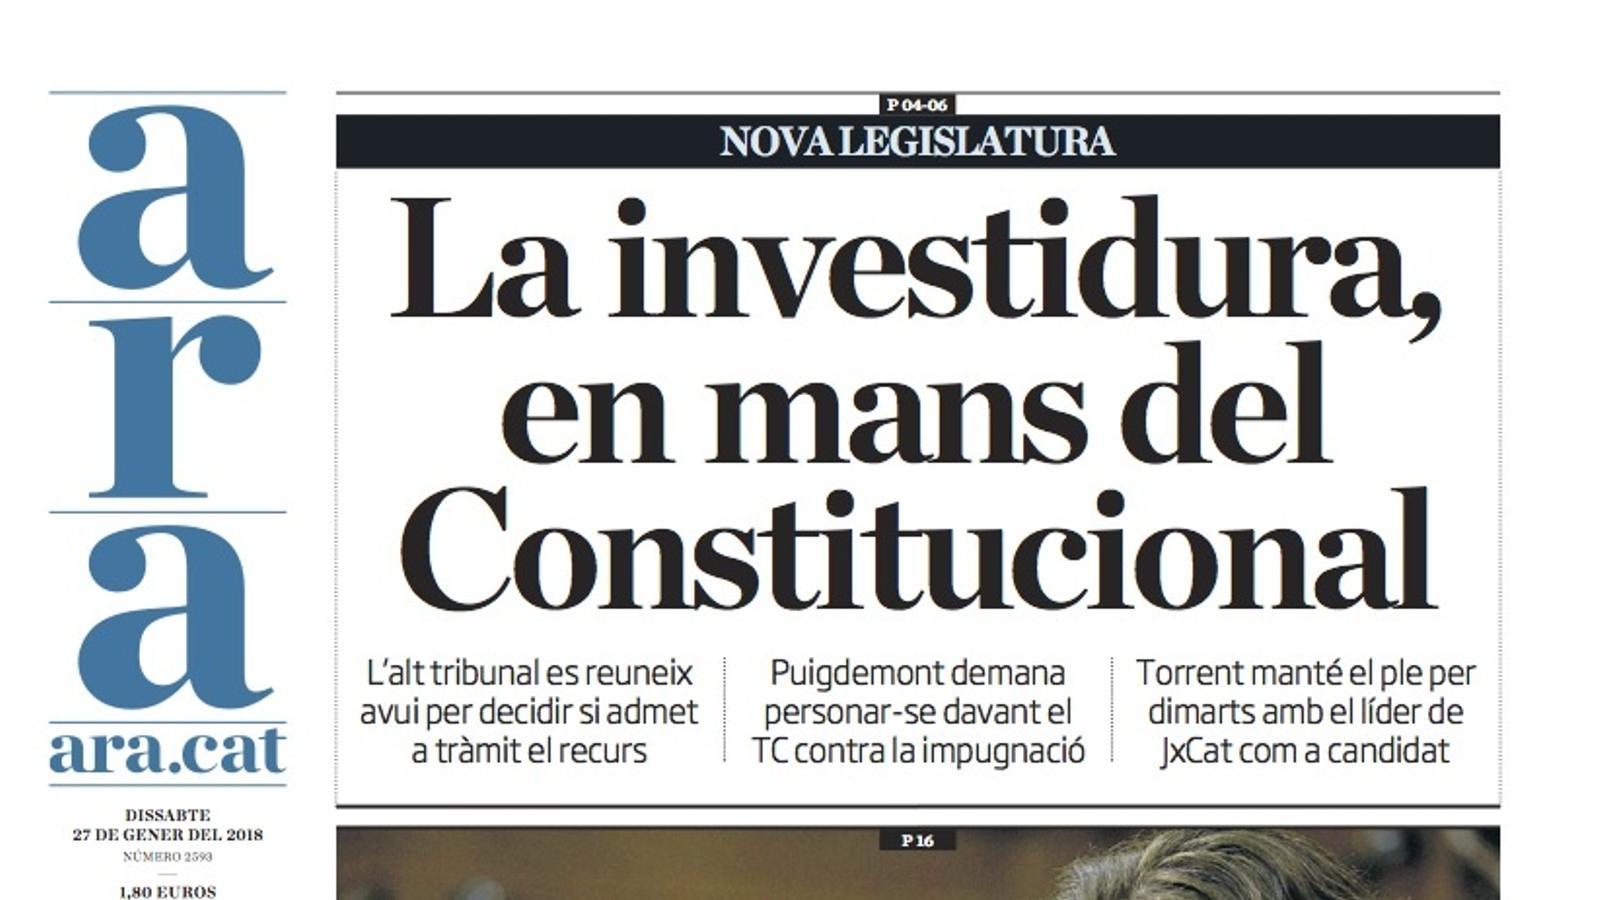 "La investidura, en mans del Constitucional", portada de l'ARA